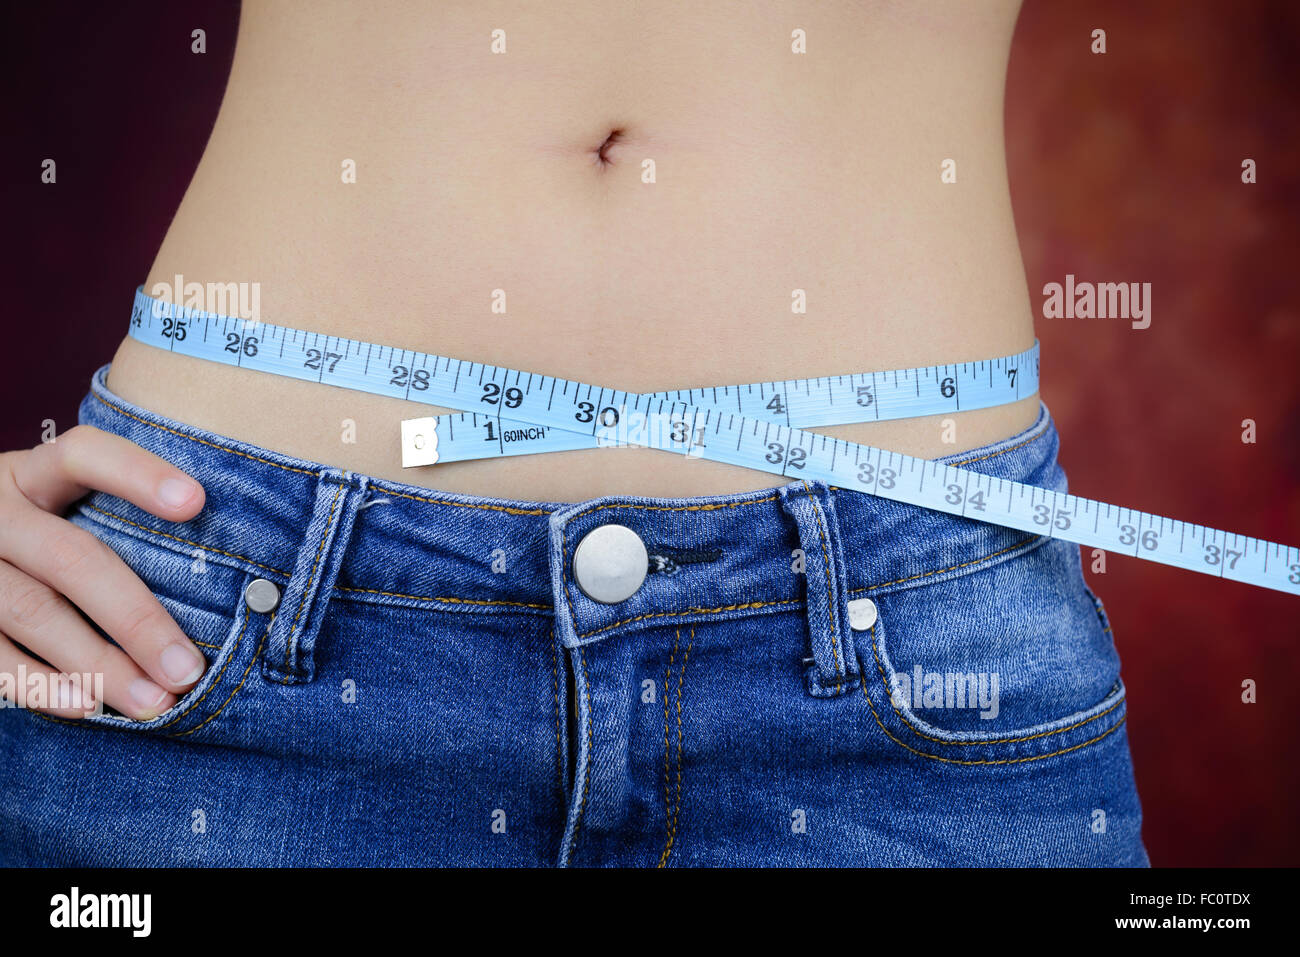 Femme asiatique slim , portant des jeans, la mesure de sa forme du corps, de la taille, des fesses Banque D'Images